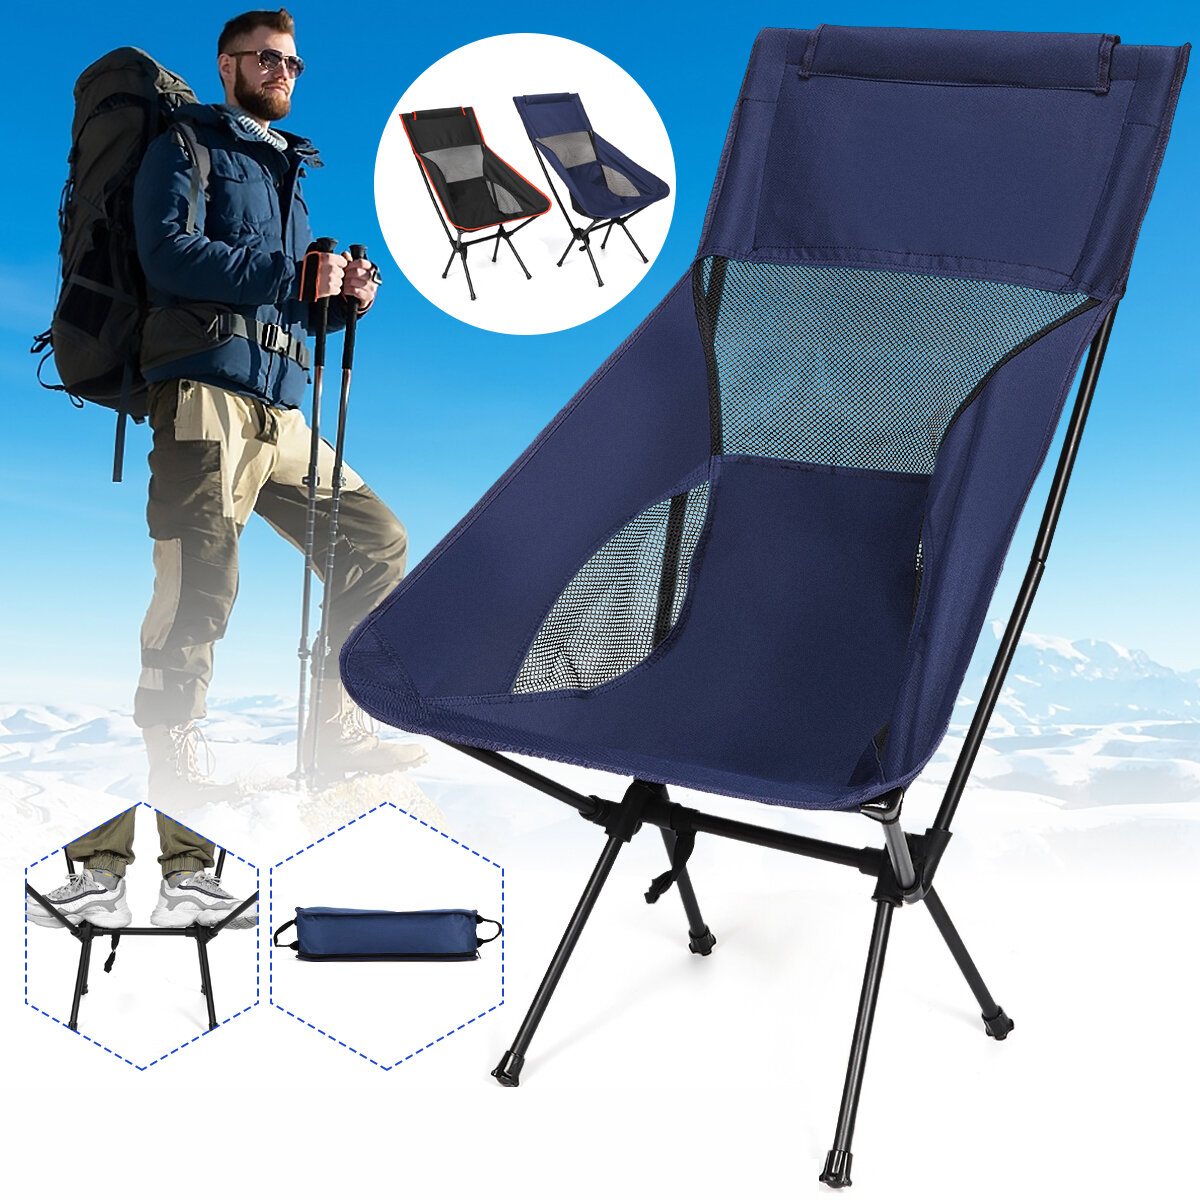 Składane krzesło księżycowe Lekki stołek wędkarski Camping BBQ Seat Outdoor Travel Maksymalne obciążenie 265lbs